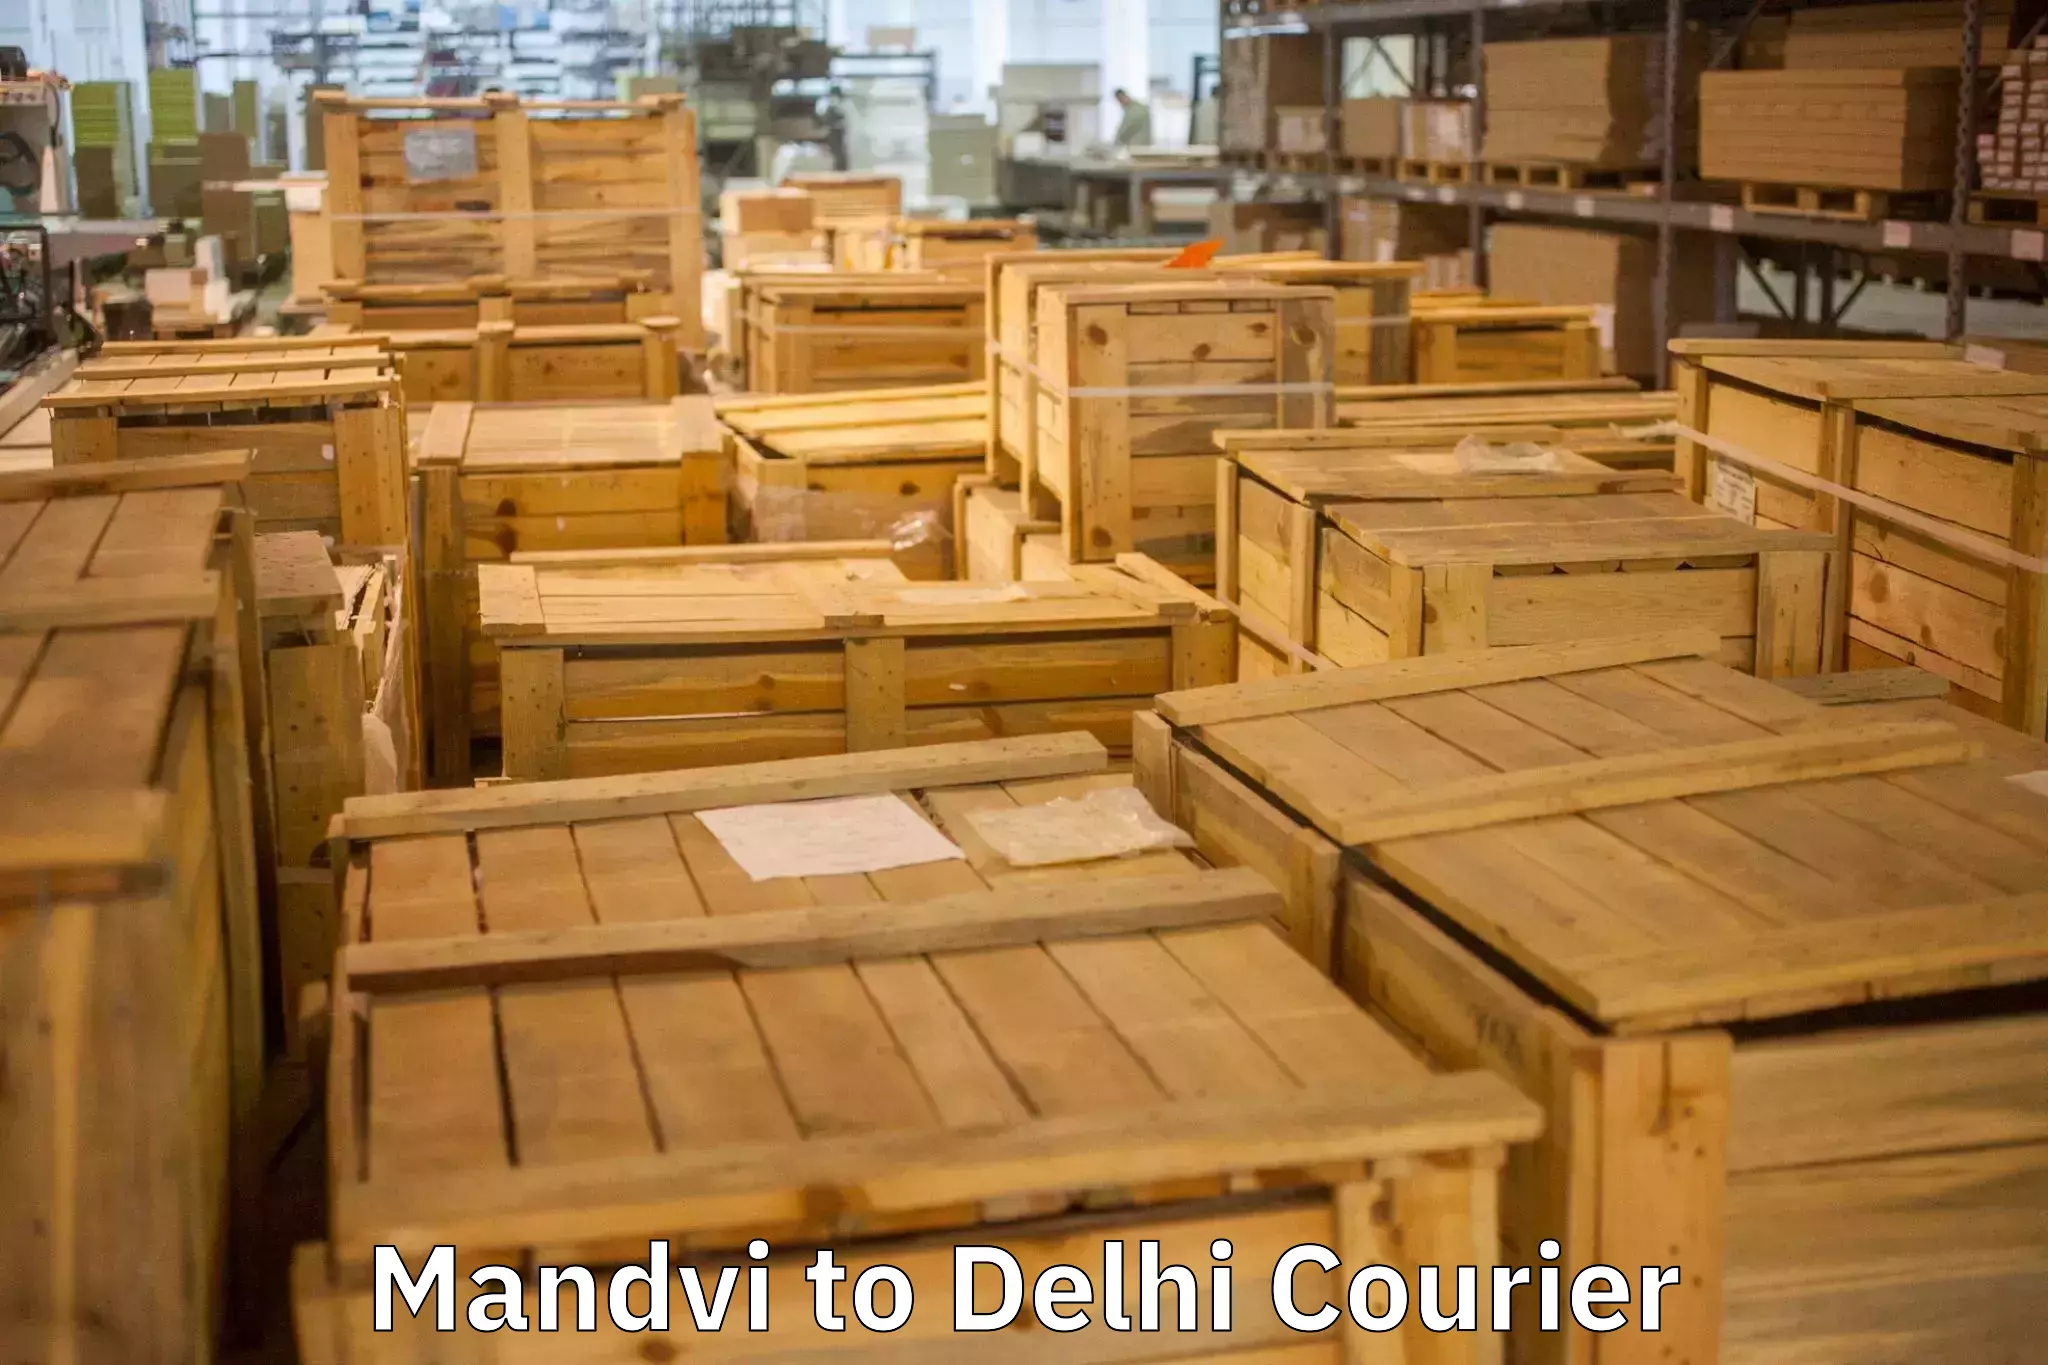 Trusted moving company Mandvi to Kalkaji